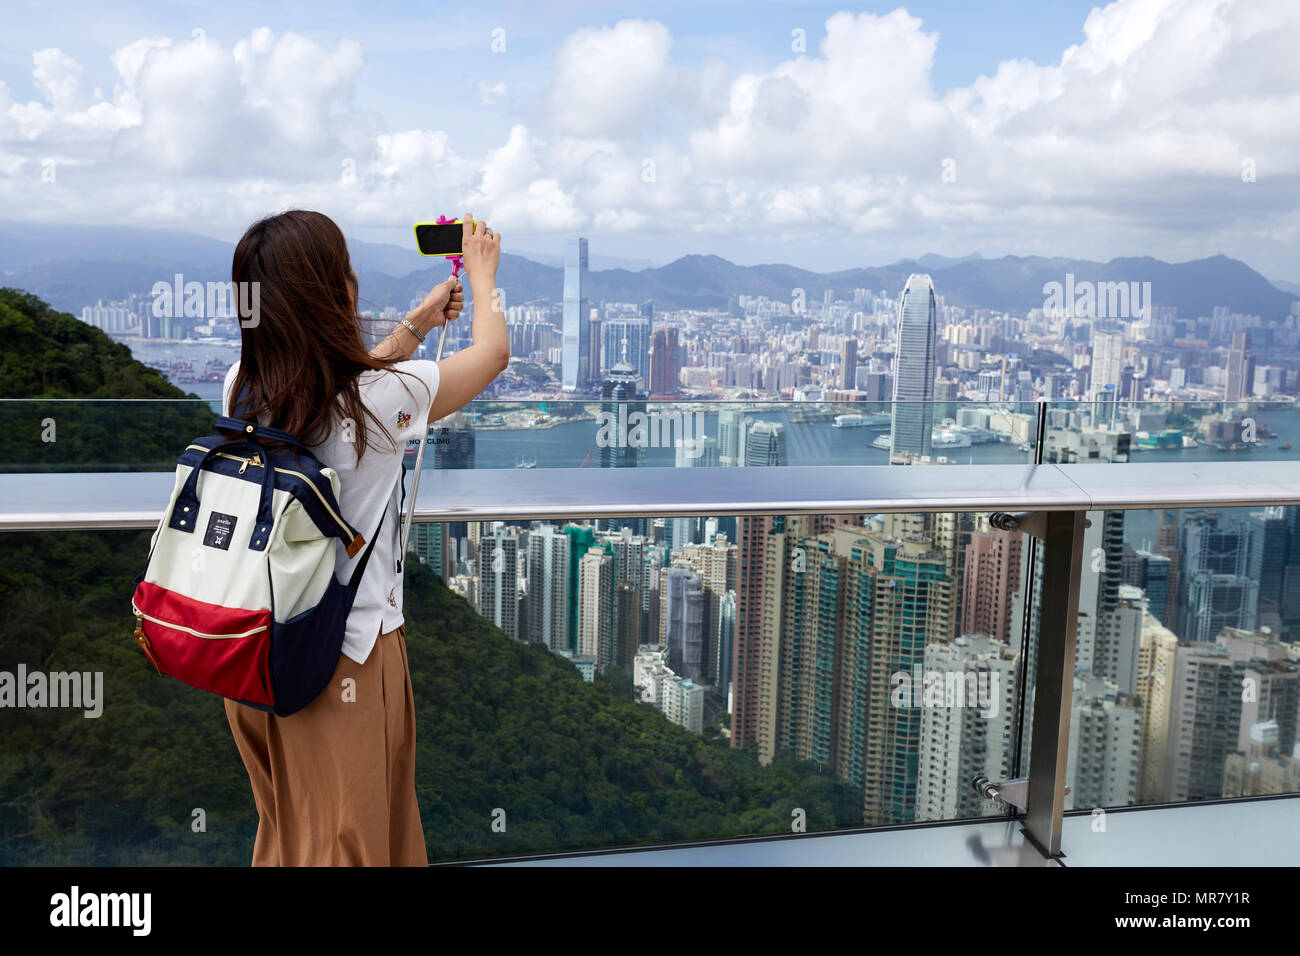 Ein sightseer nimmt Fotos von Hong Kong mit Blick in Richtung Kowloon, wie vom Victoria Peak auf Hong Kong Island gesehen und mit Blick auf die Stadt. Stockfoto